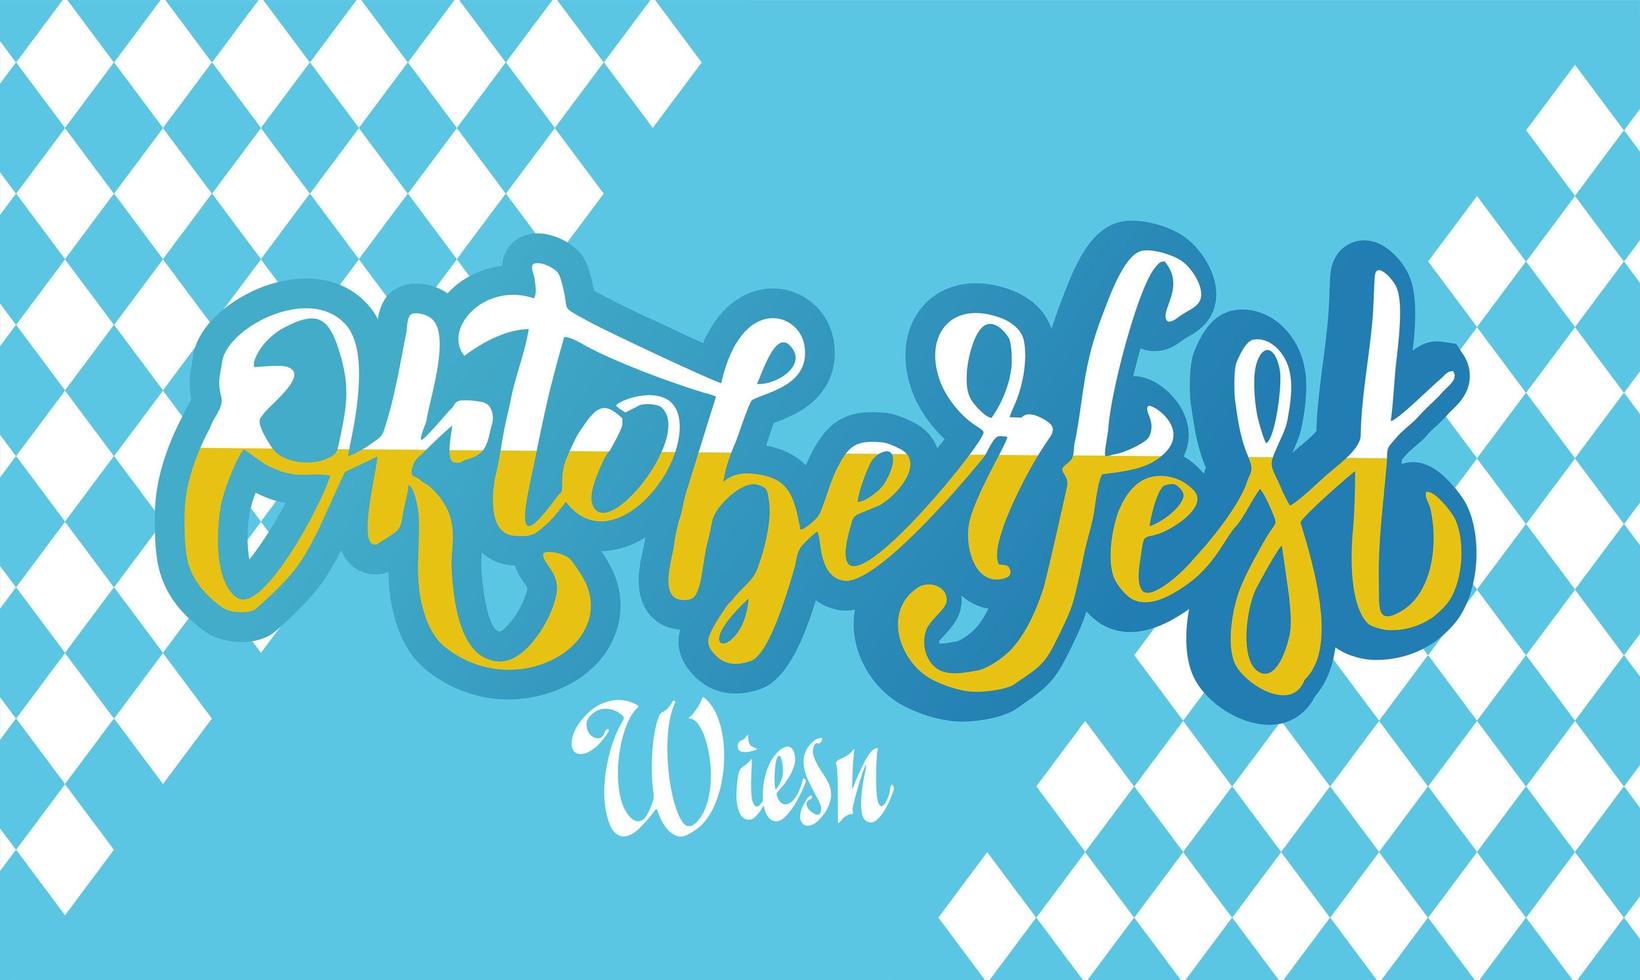 logotipo di lettere scritte a mano dell'oktoberfest wiesn su motivo bavarese bianco e blu. bandiera di vettore del festival della birra. tipografia scritta blu, bianca per poster, carta. la parola è piena di birra schiumosa